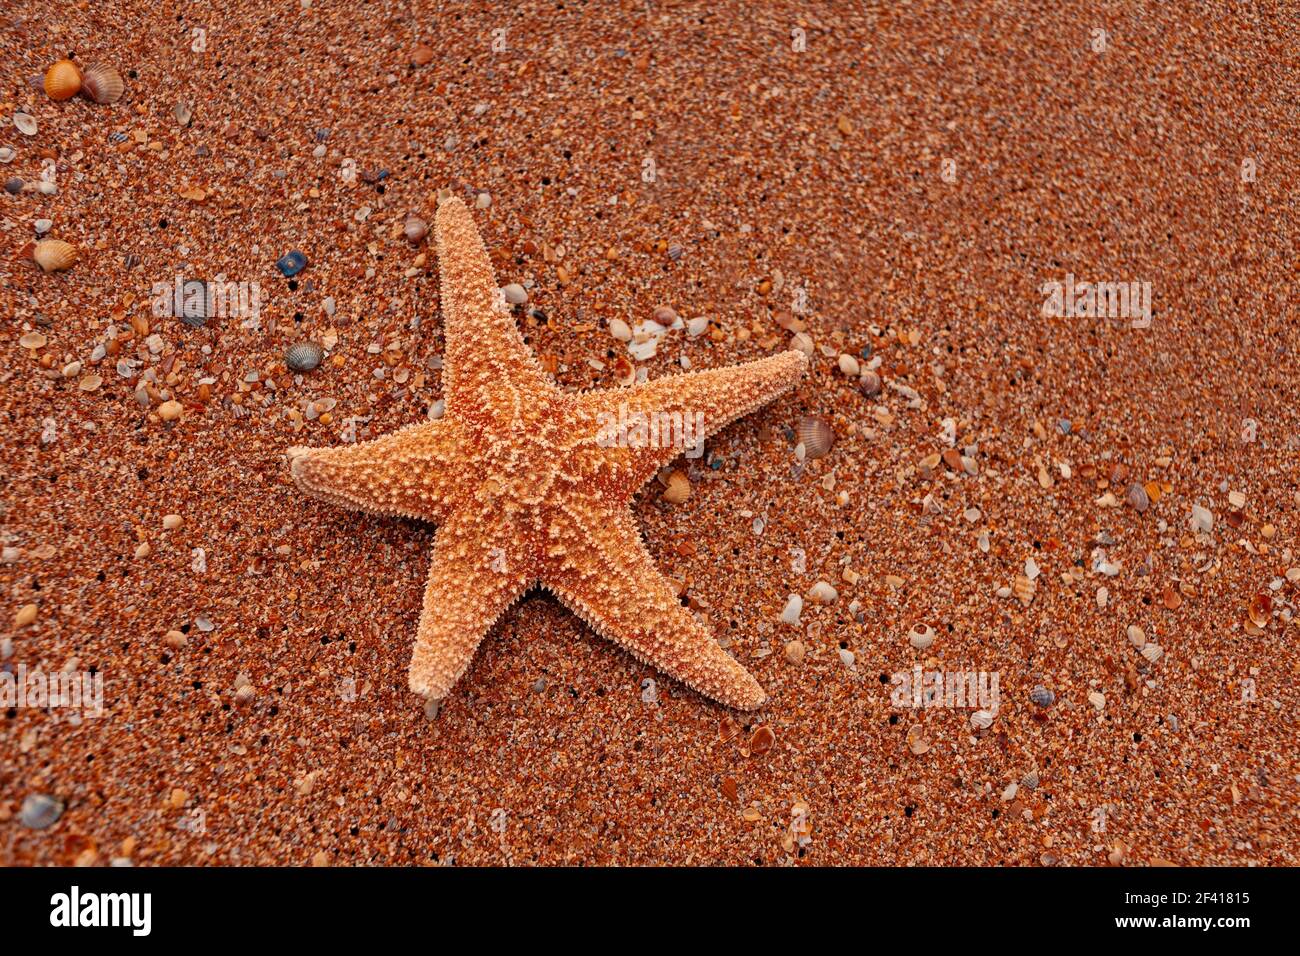 Étoiles de mer sur le sable comme bains de soleil touristiques, copier l'espace. Des étoiles de mer seules sur le sable comme bains de soleil touristiques Banque D'Images